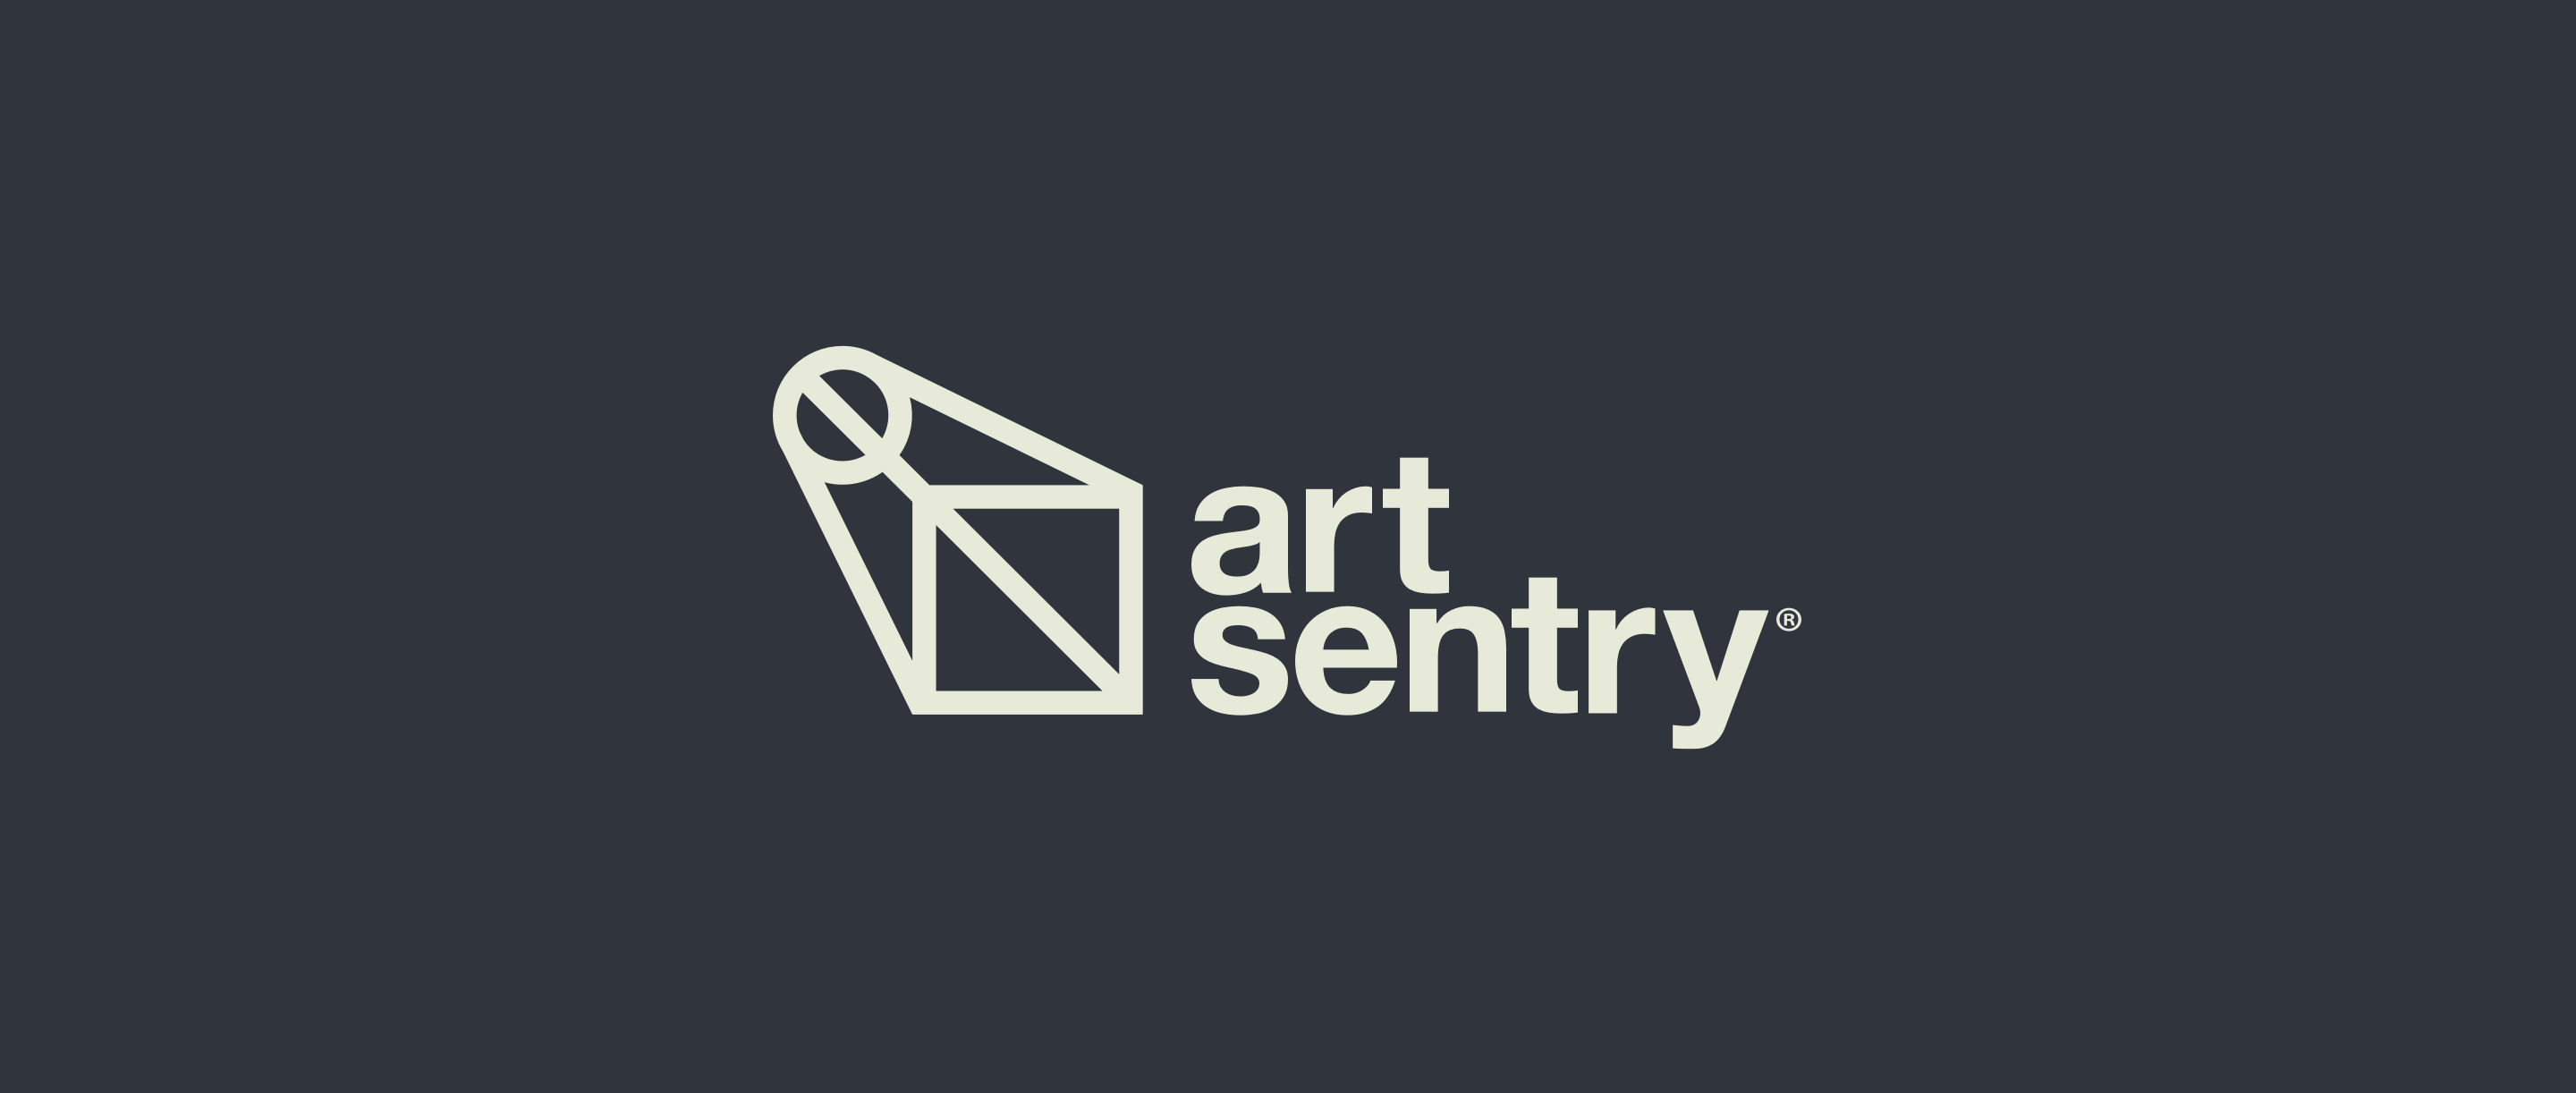 Art Sentry Logo